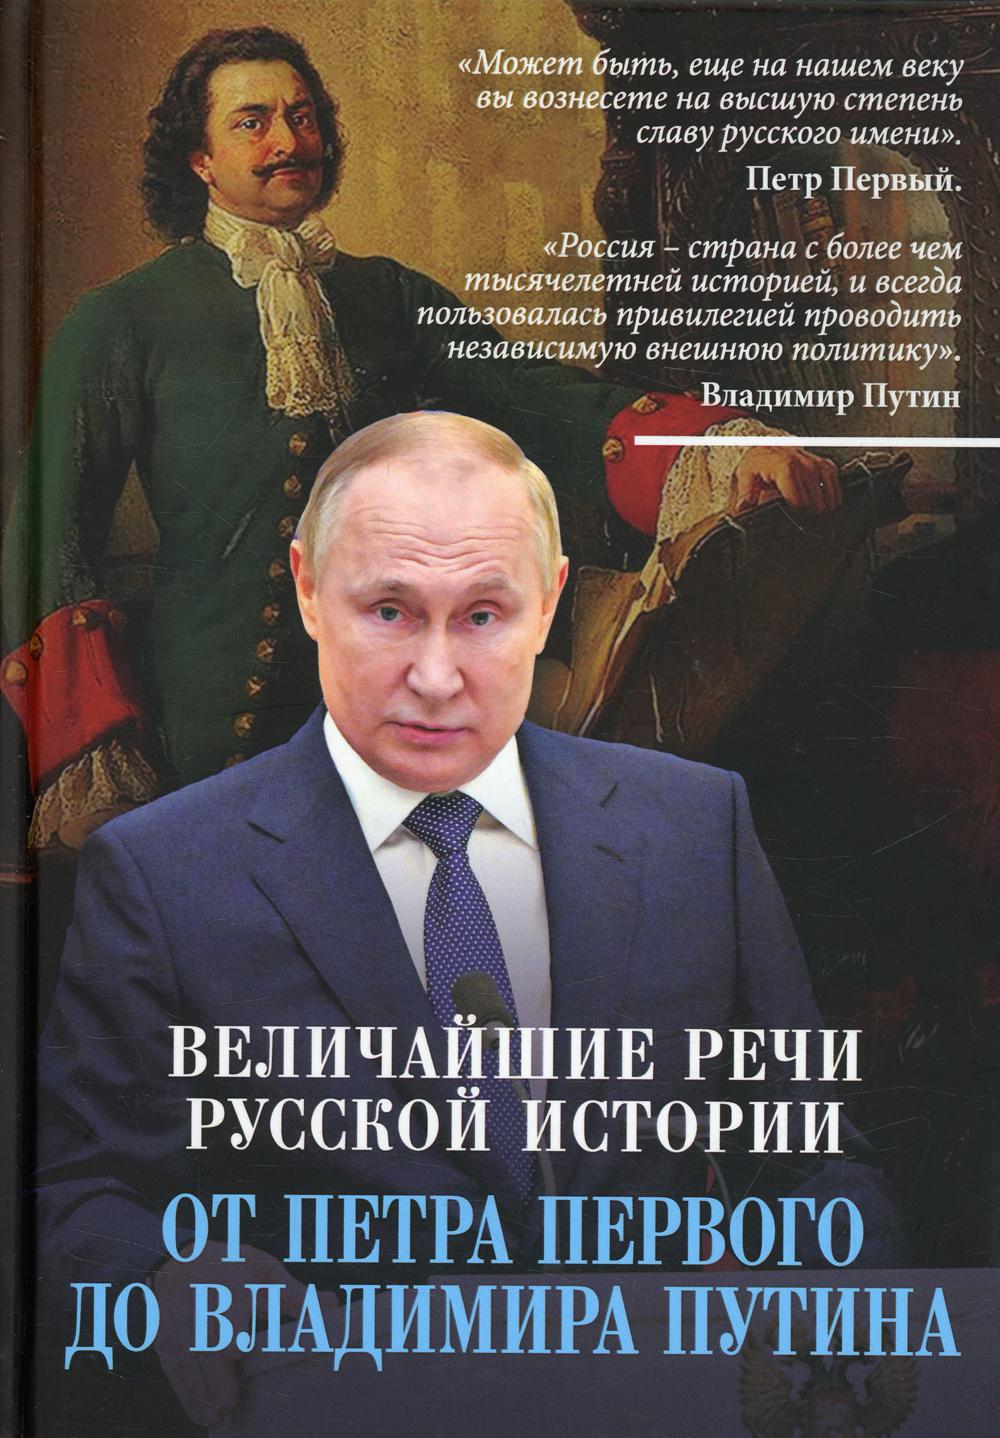 Величайшие речи российской истории: от Петра Первого до Владимира Путина